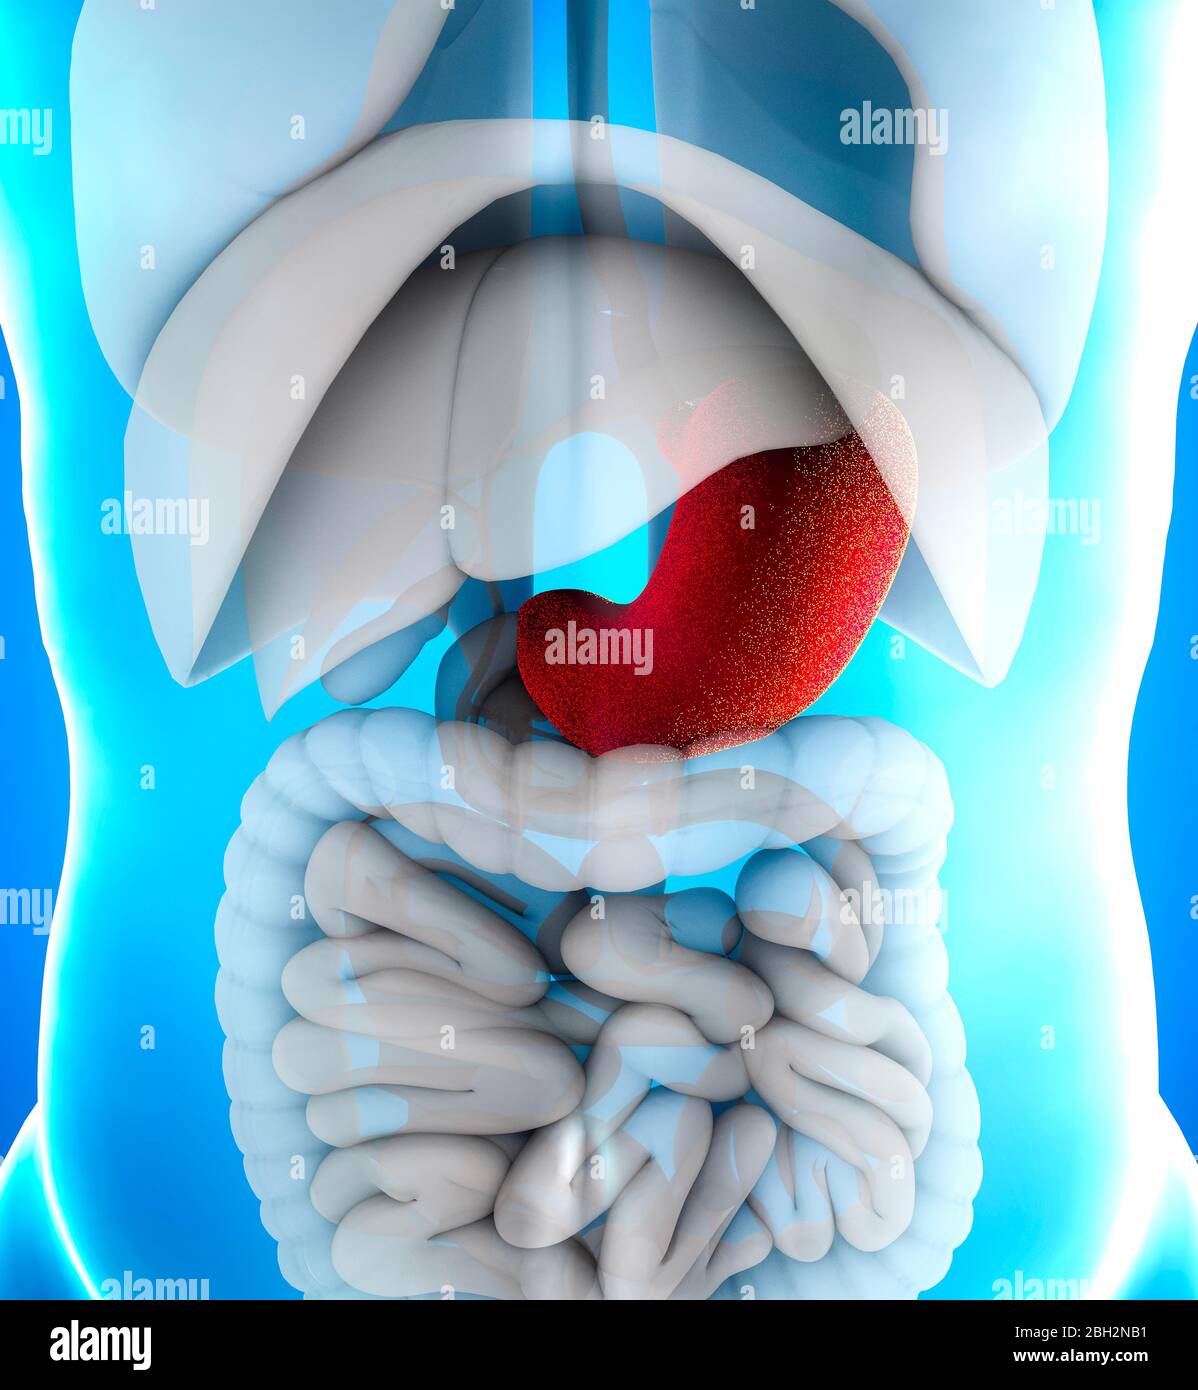 El estómago es un órgano muscular hueco en el tracto gastrointestinal. Tiene una estructura dilatada y funciona como un órgano digestivo vital. Foto de stock